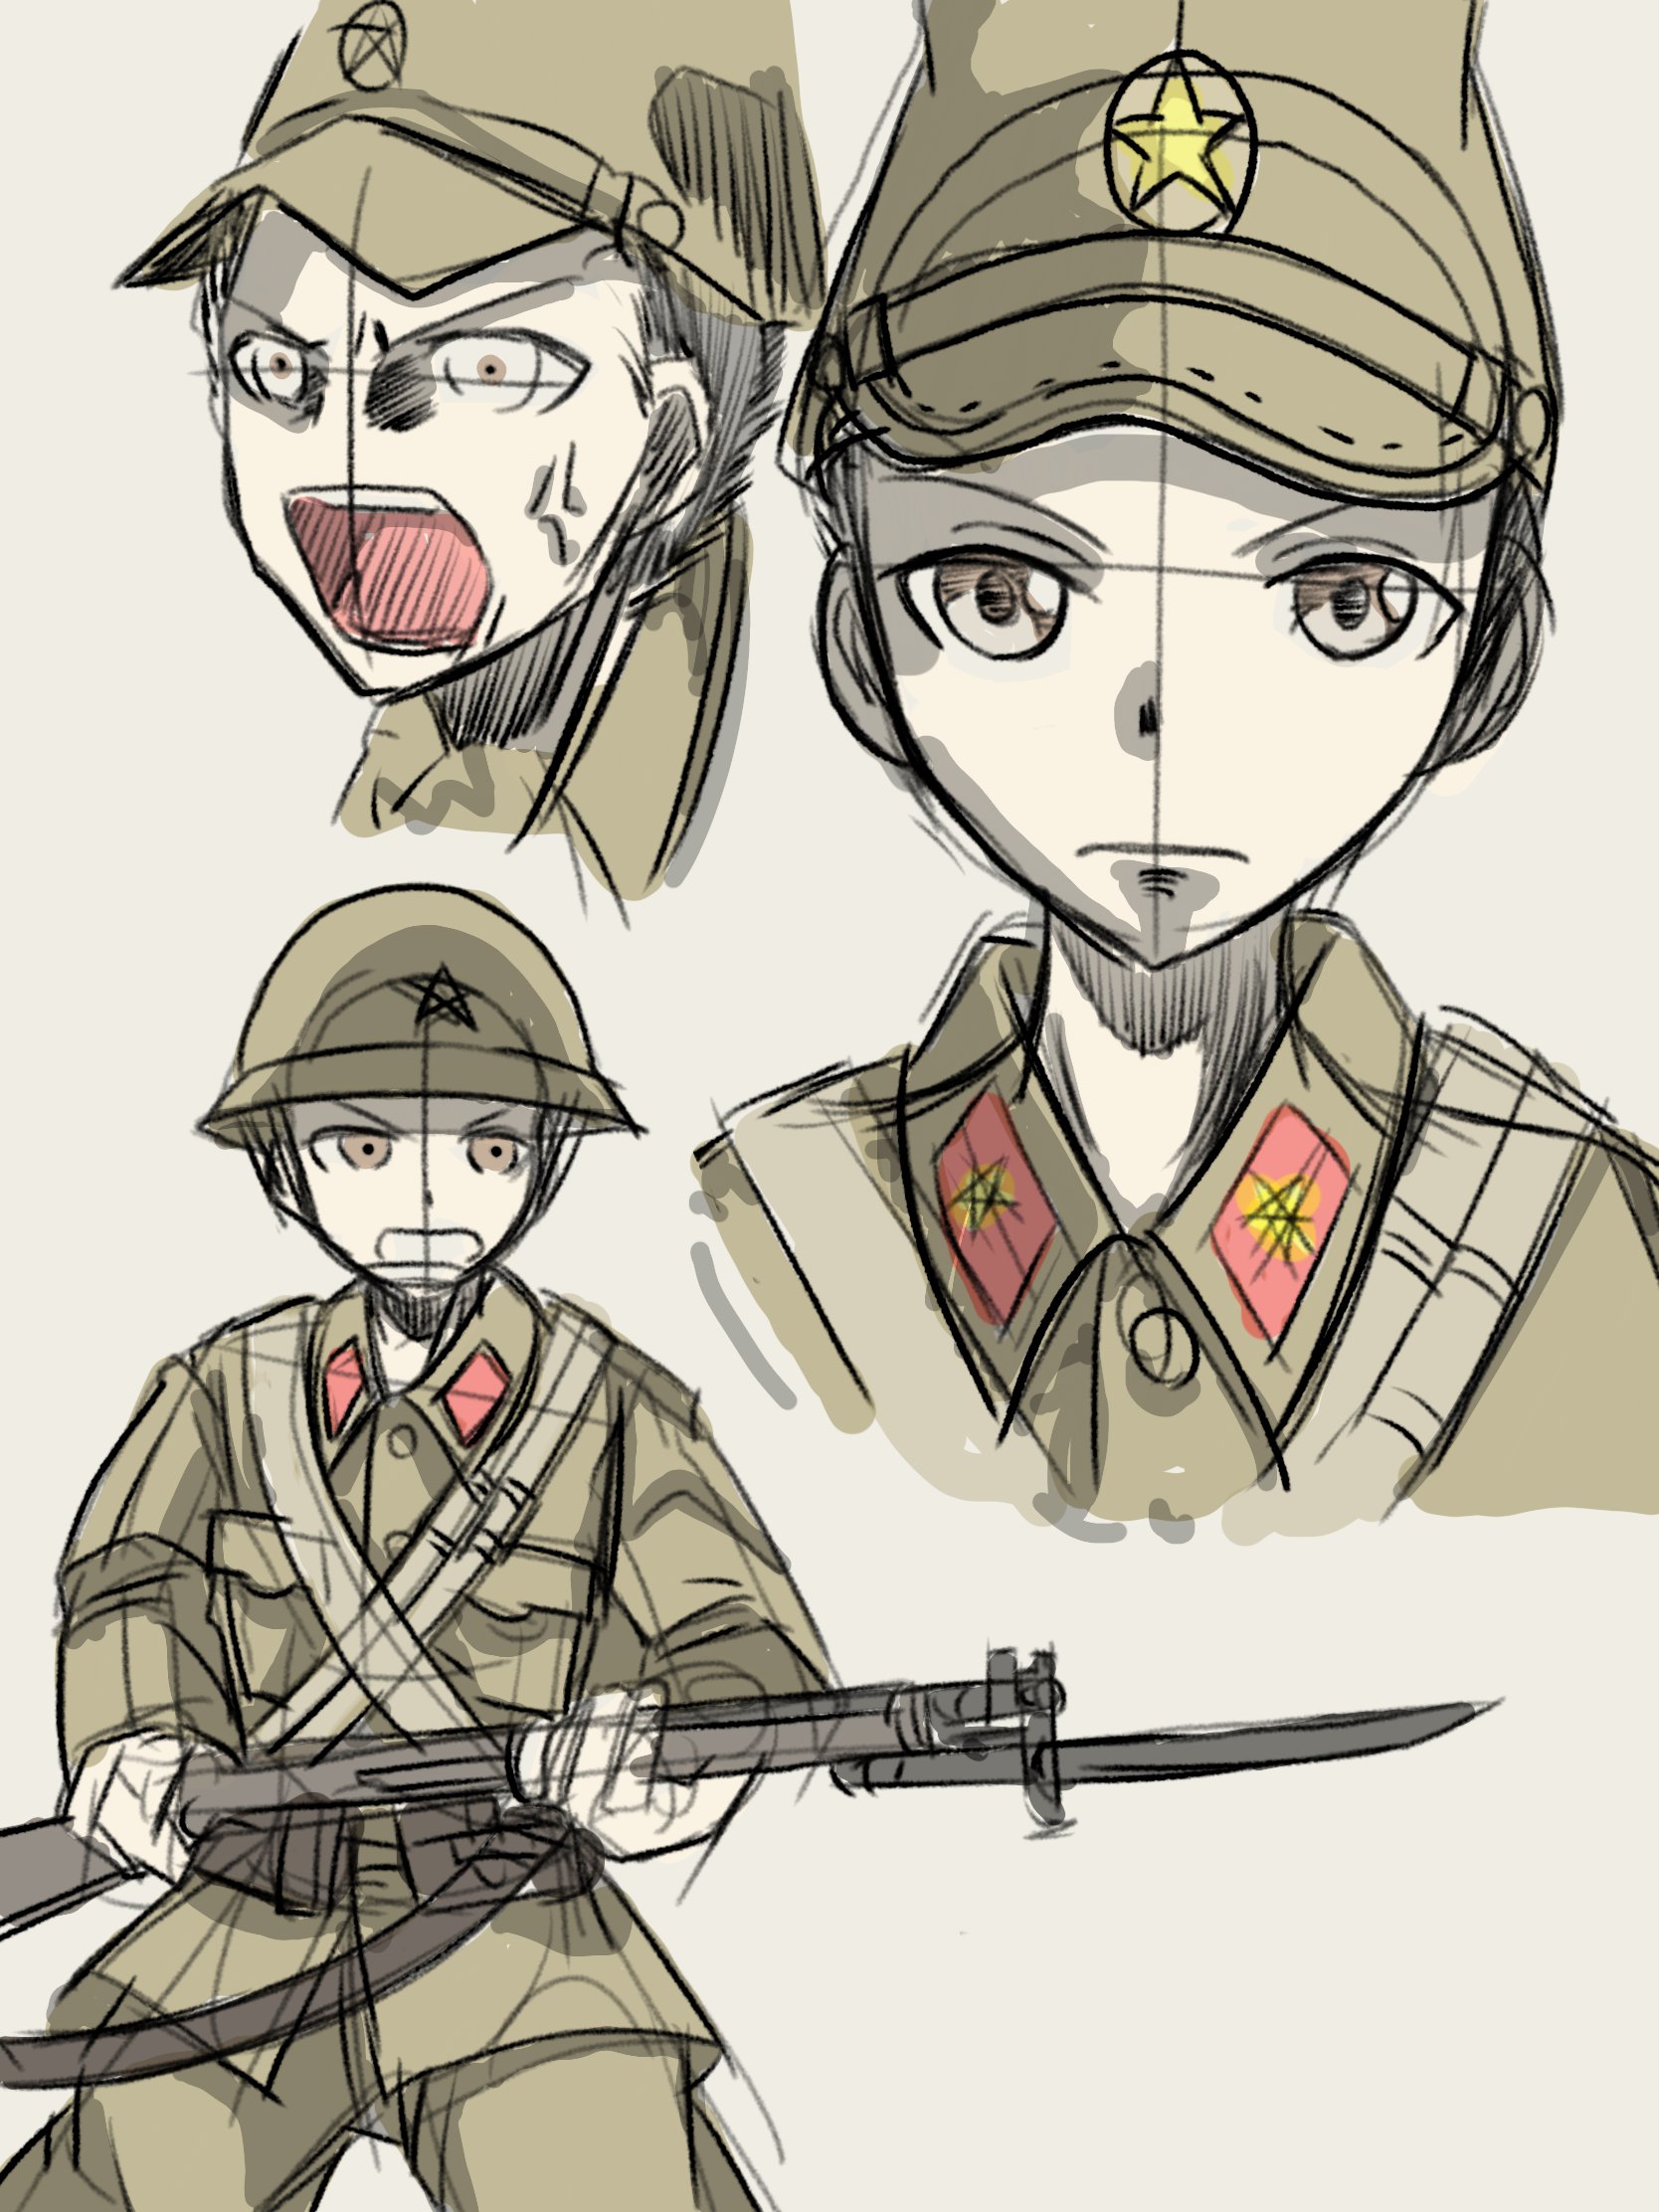 パッツィ Agent47 Twitter પર 日本軍のイラストに色を塗ったもの 1枚目はカミカゼの図 2枚目は陸軍ですね 超厄介です T Co Ftvbext2u6 Twitter